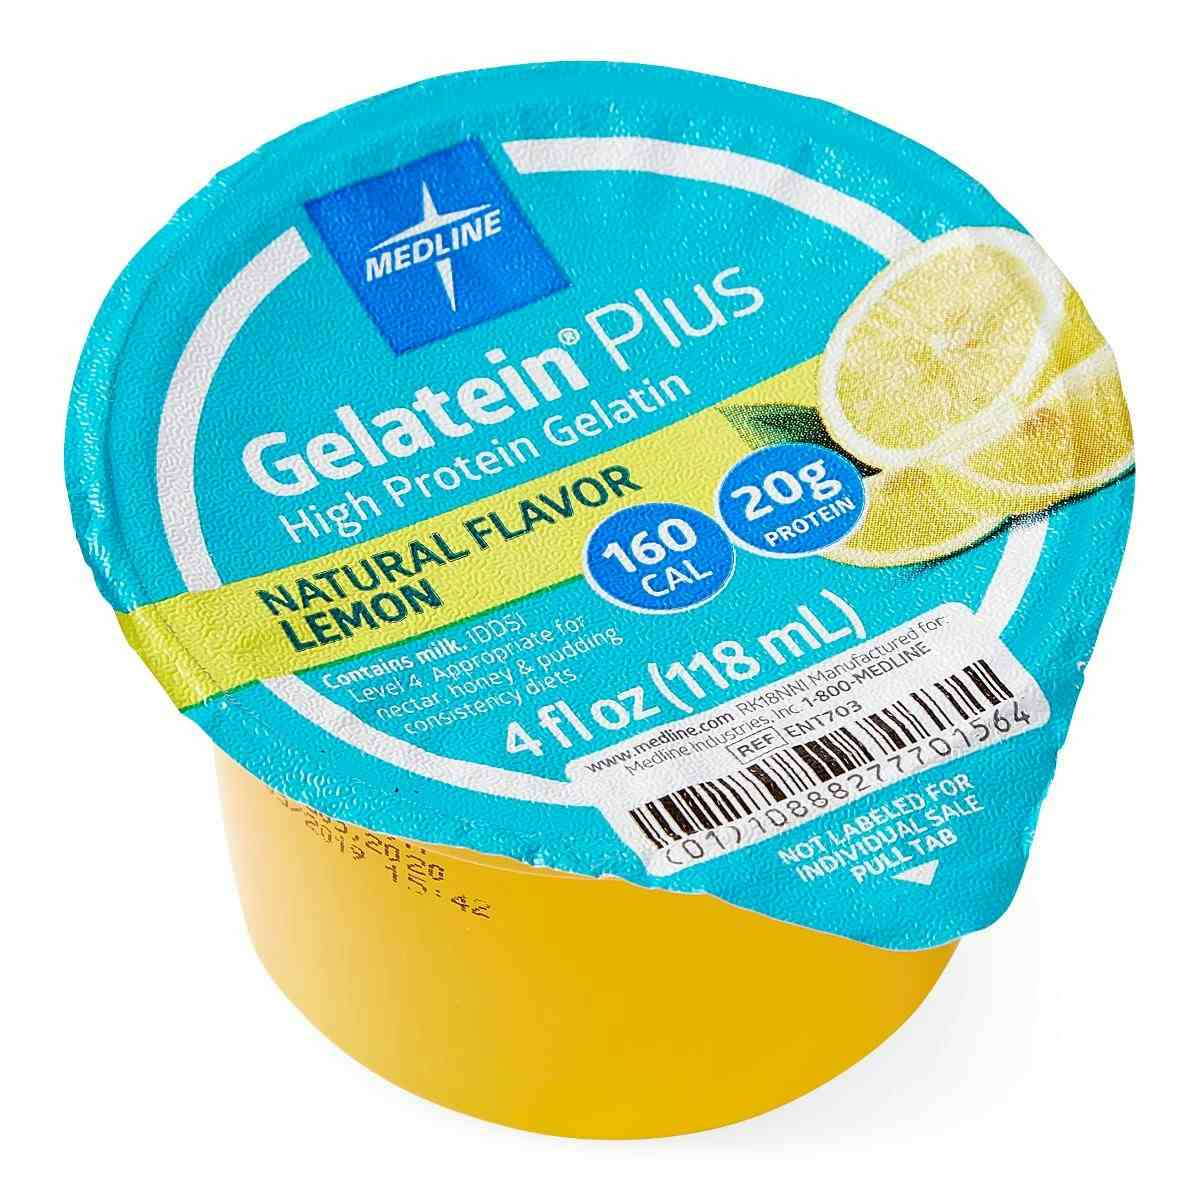 Medline Gelatein Plus High Protein Supplement, Lemon Flavor, 4-oz